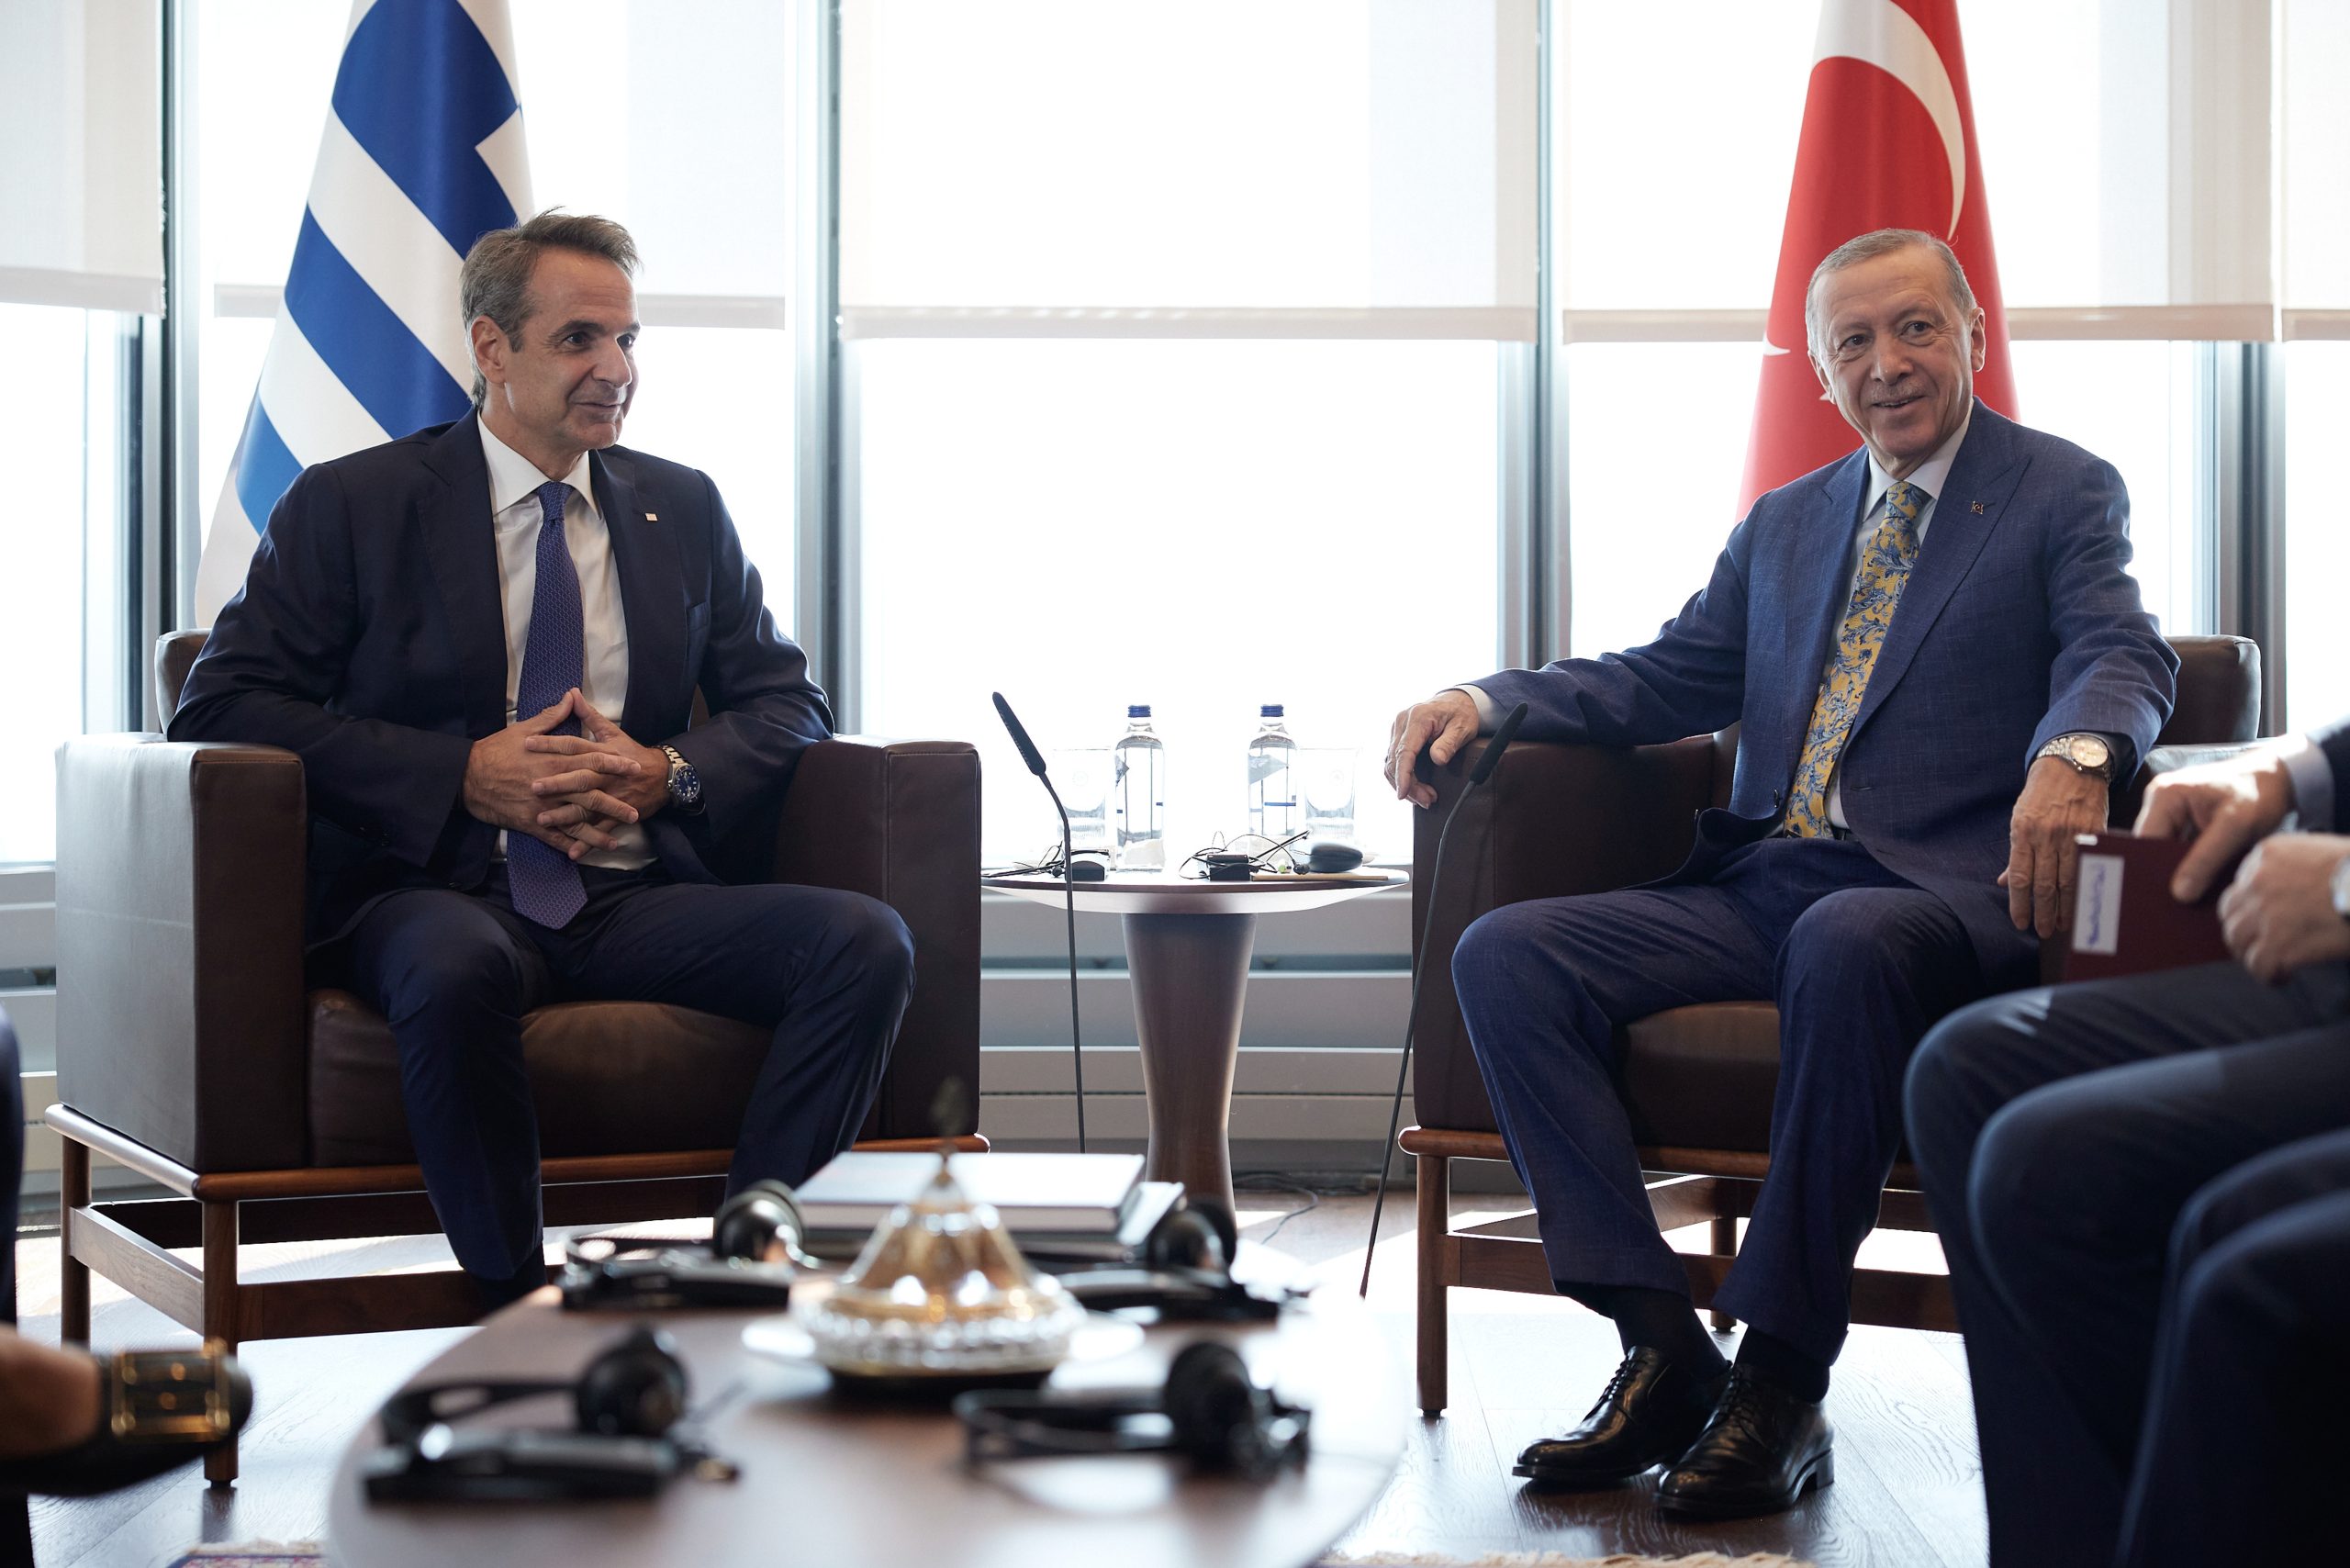 Τουρκικά ΜΜΕ: Η Ελλάδα σταμάτησε να εξοπλίζει νησιά μετά τη συνάντηση Μητσοτάκη – Ερντογάν